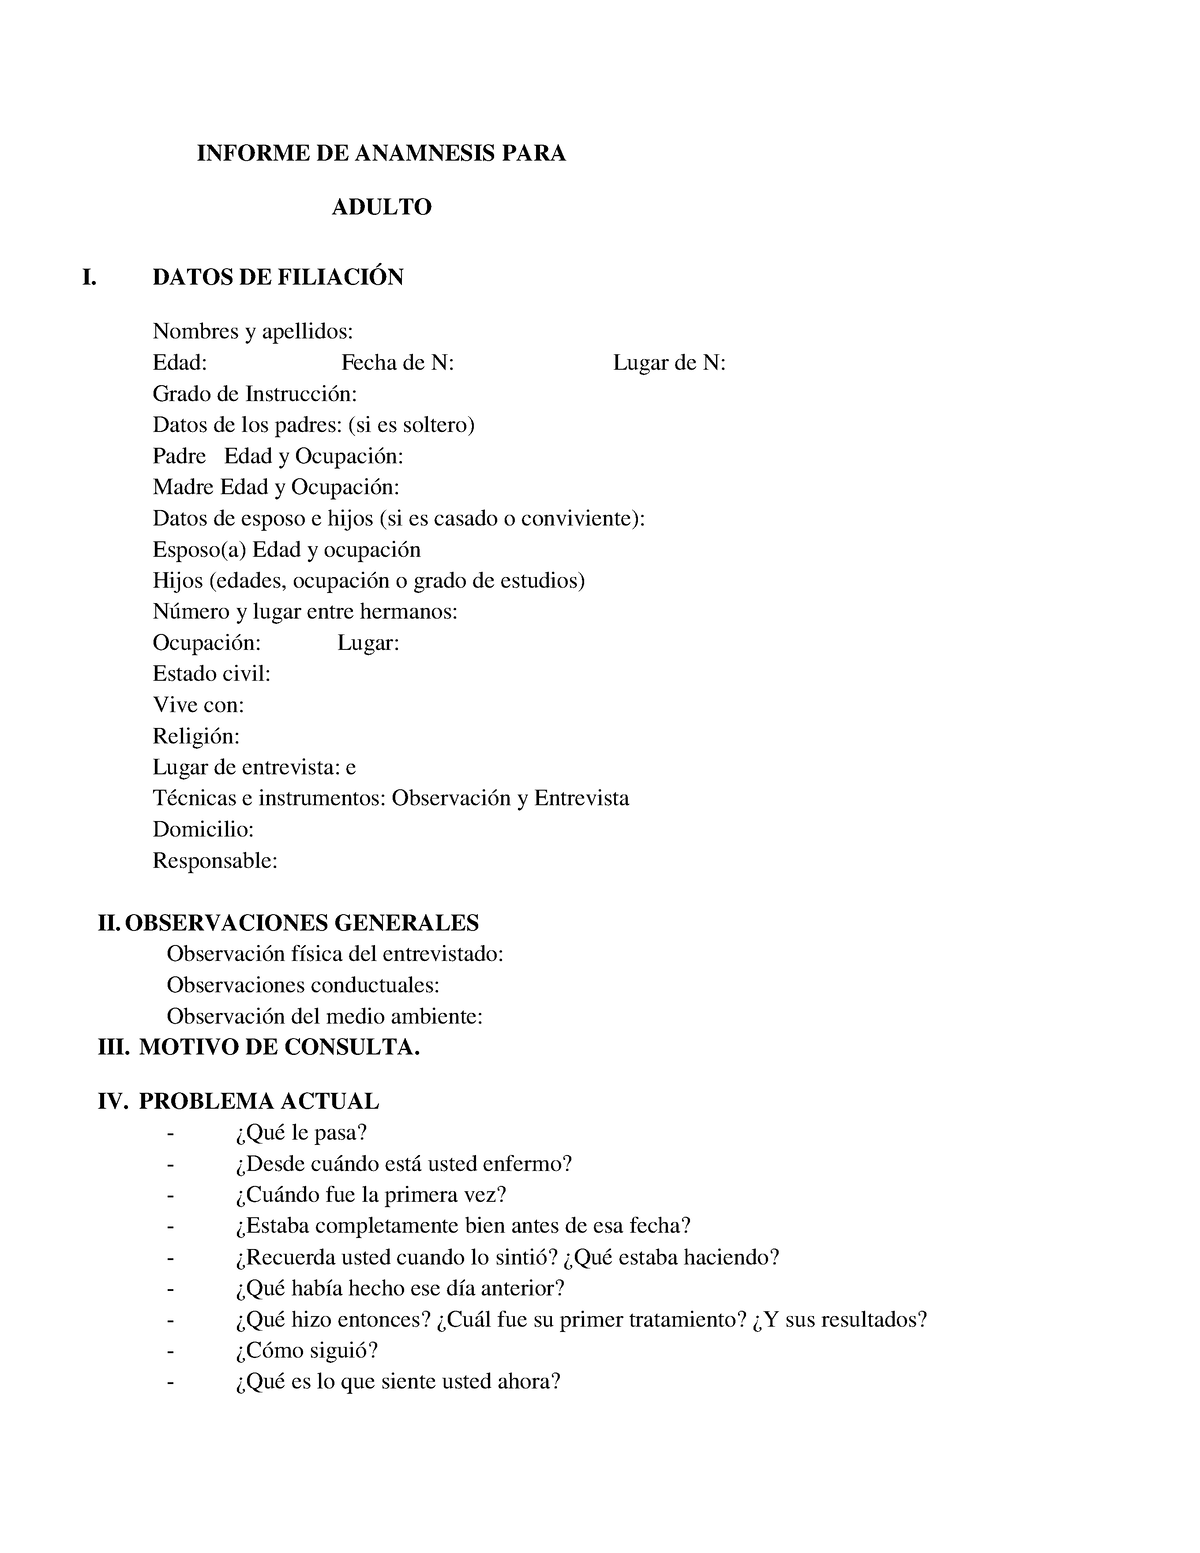 Anamnesis Clinica De Adultos Informe De Anamnesis Para Adulto I Datos De FiliaciÓn Nombres Y 2568